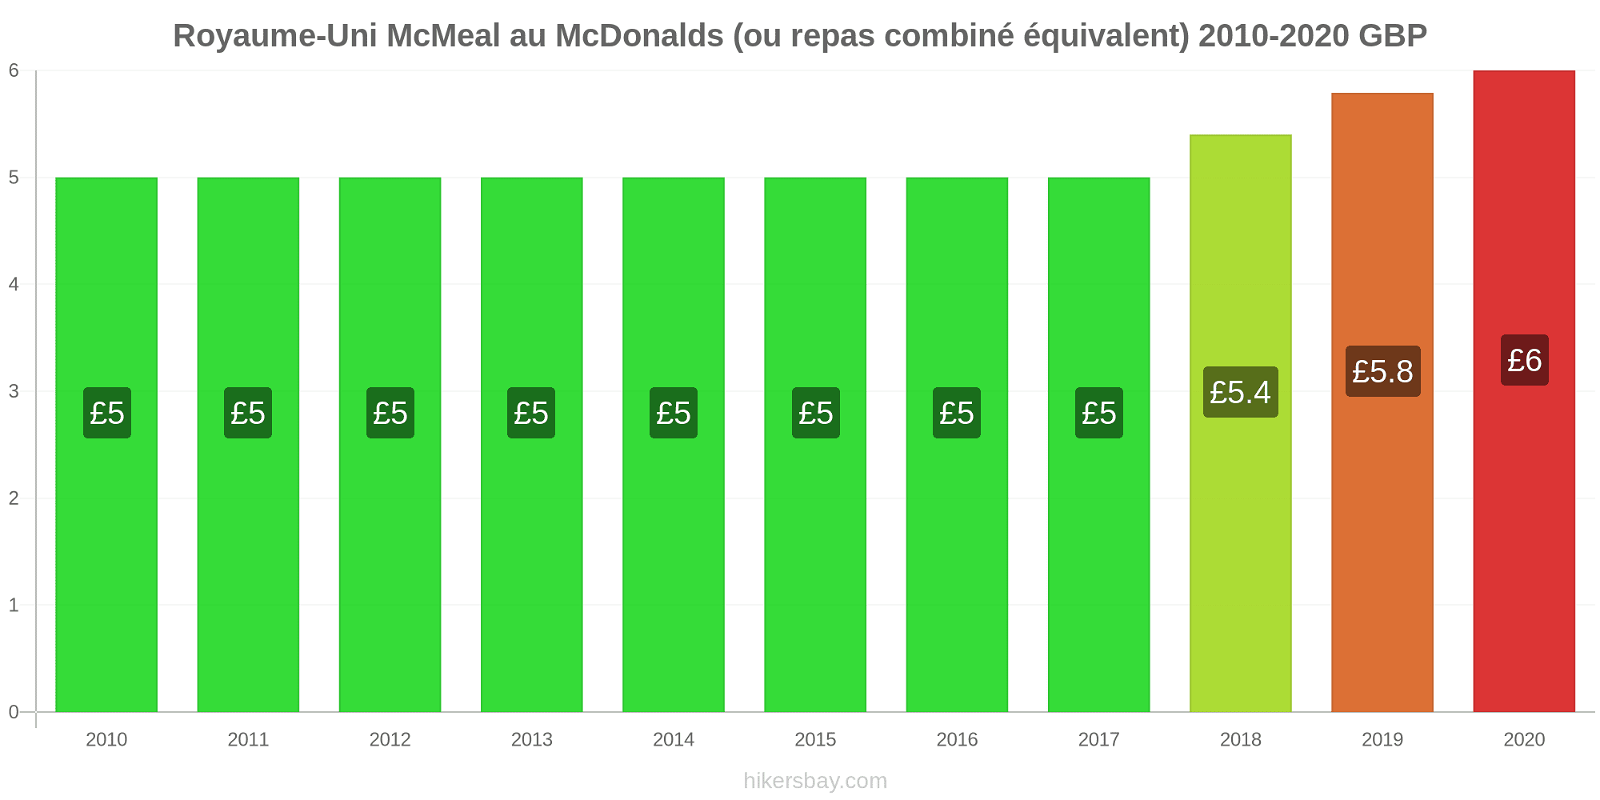 Royaume-Uni changements de prix McMeal à McDonald ' s (ou Combo équivalent tourteau) hikersbay.com